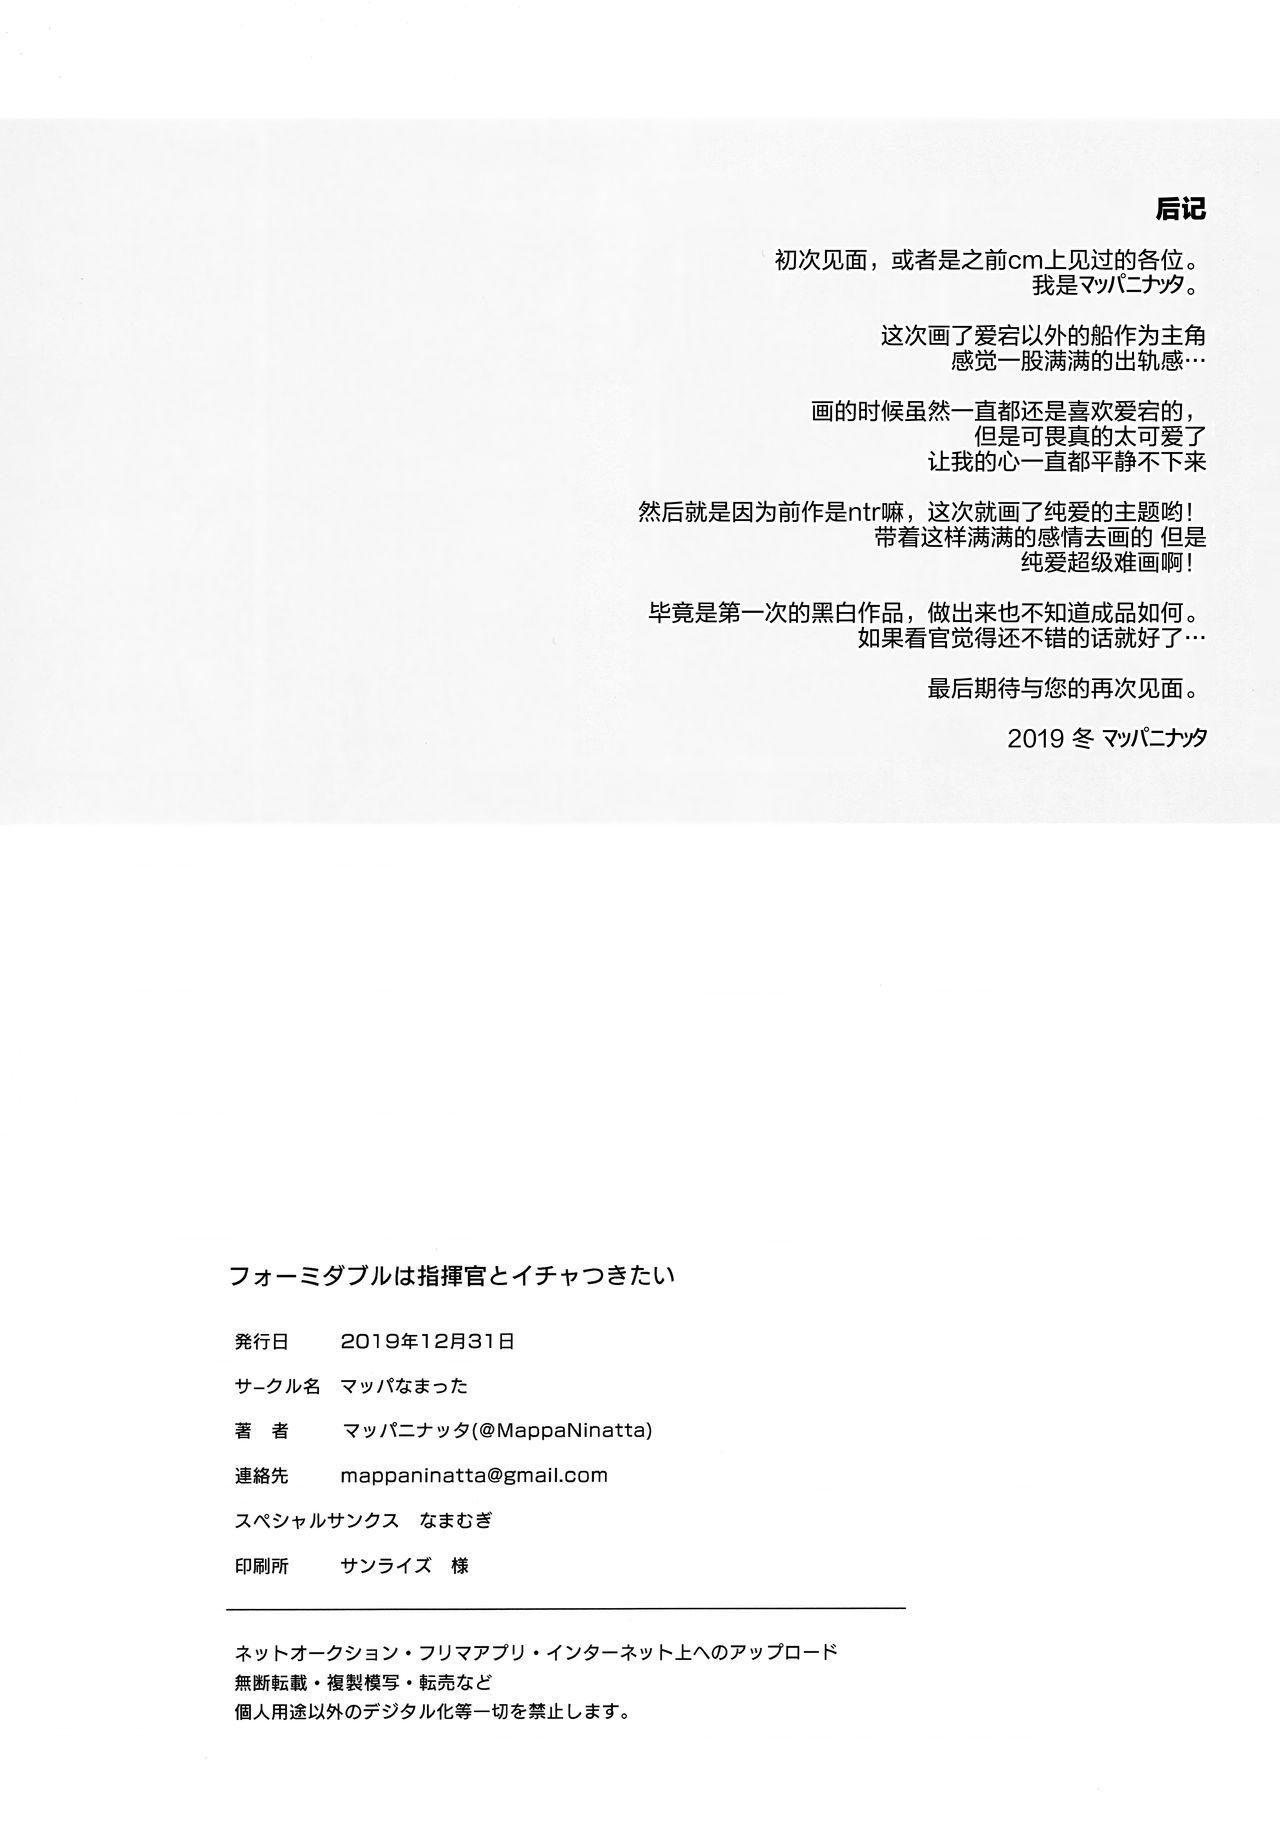 Crazy Formidable wa Shikikan to Ichatsukitai - Azur lane Dick Suck - Page 24